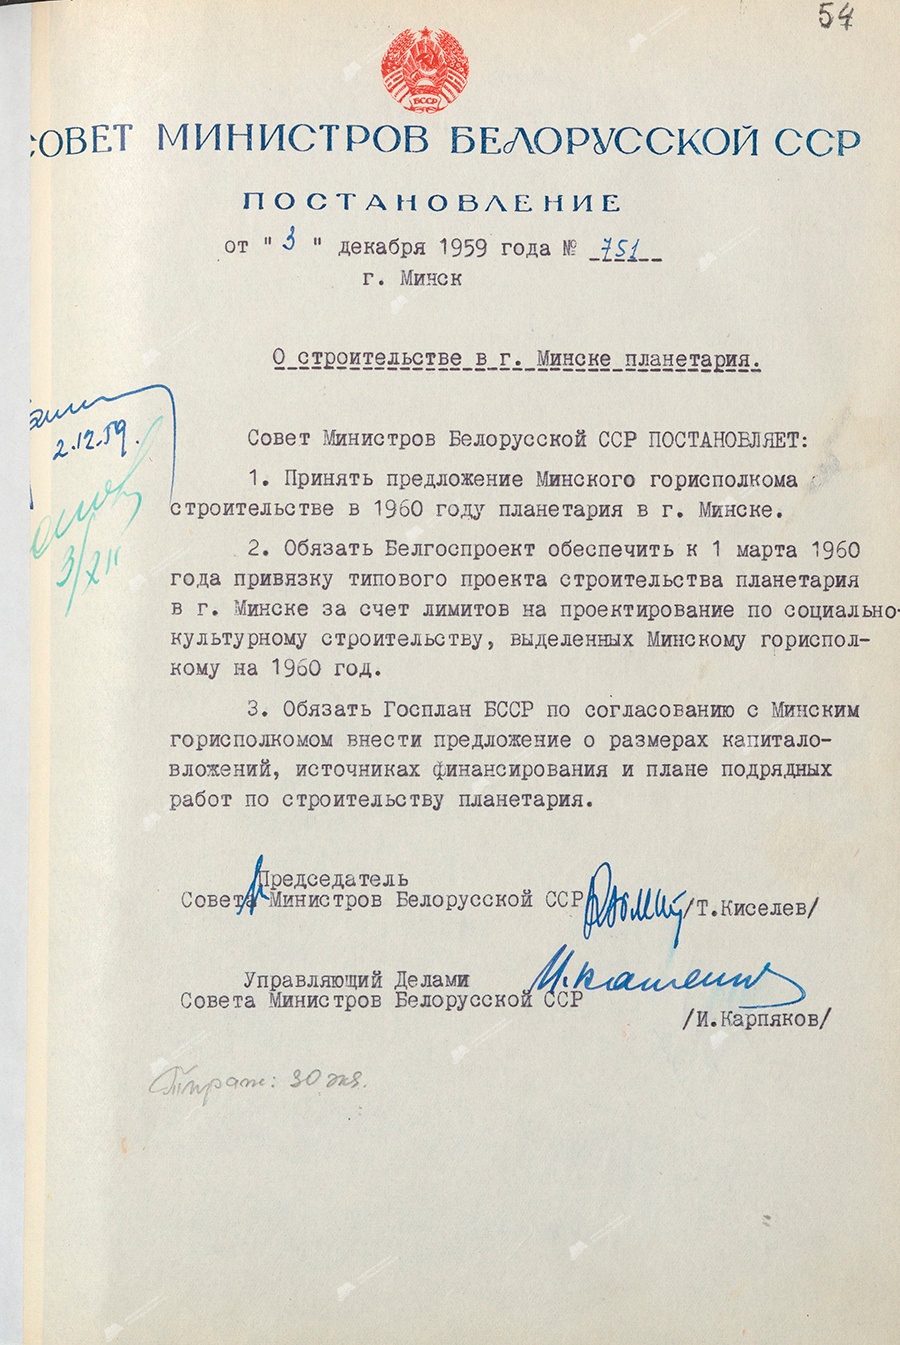 Beschluss Nr. 751 des Ministerrats der BSSR «Über den Bau eines Planetariums in Minsk»-с. 0